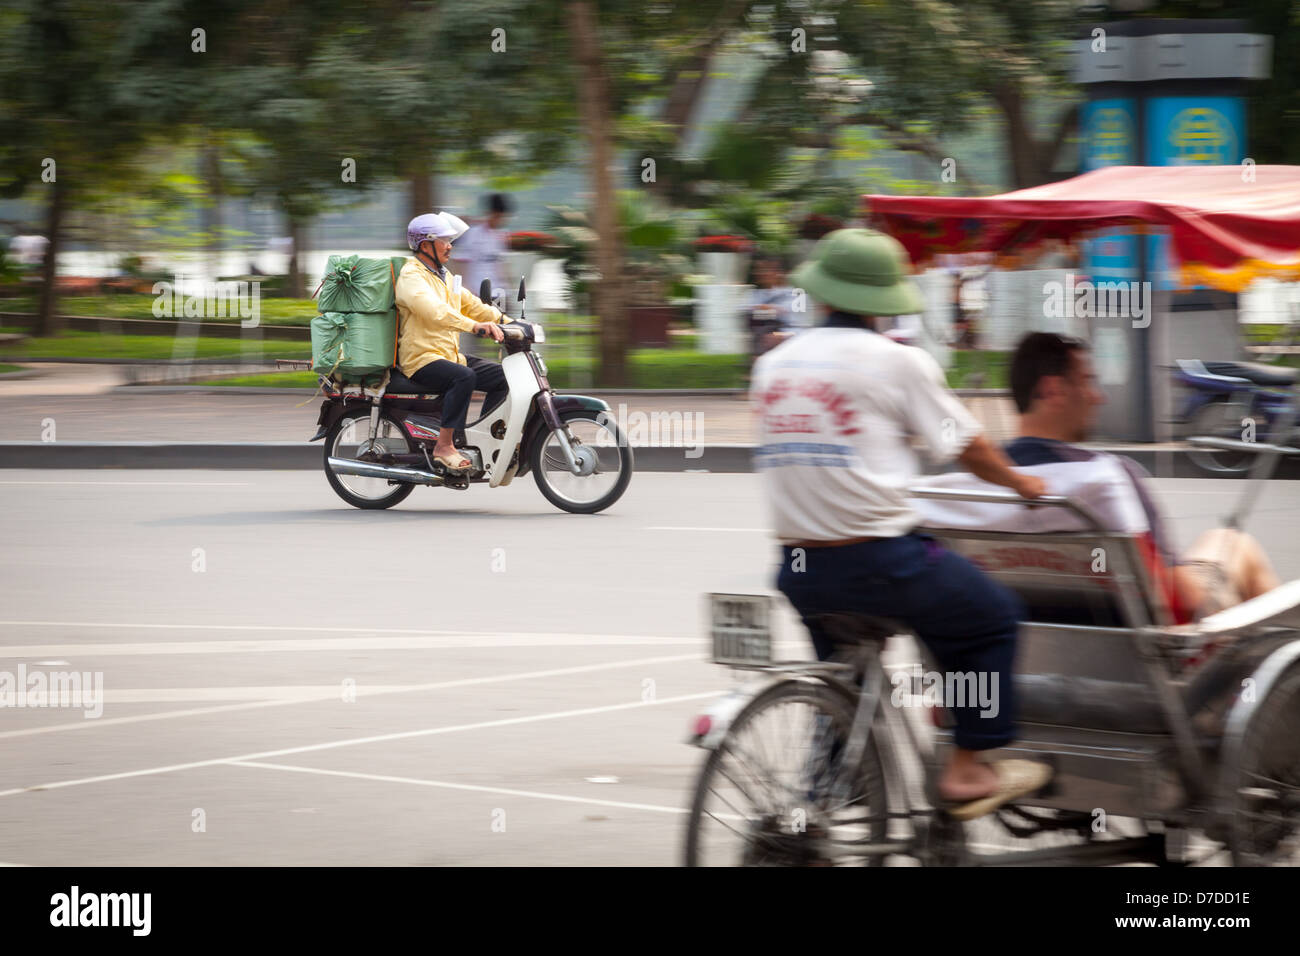 Un homme sur son scooter roulant passé Hoam Kiem et un pousse-pousse à Hanoi, Vietnam Banque D'Images